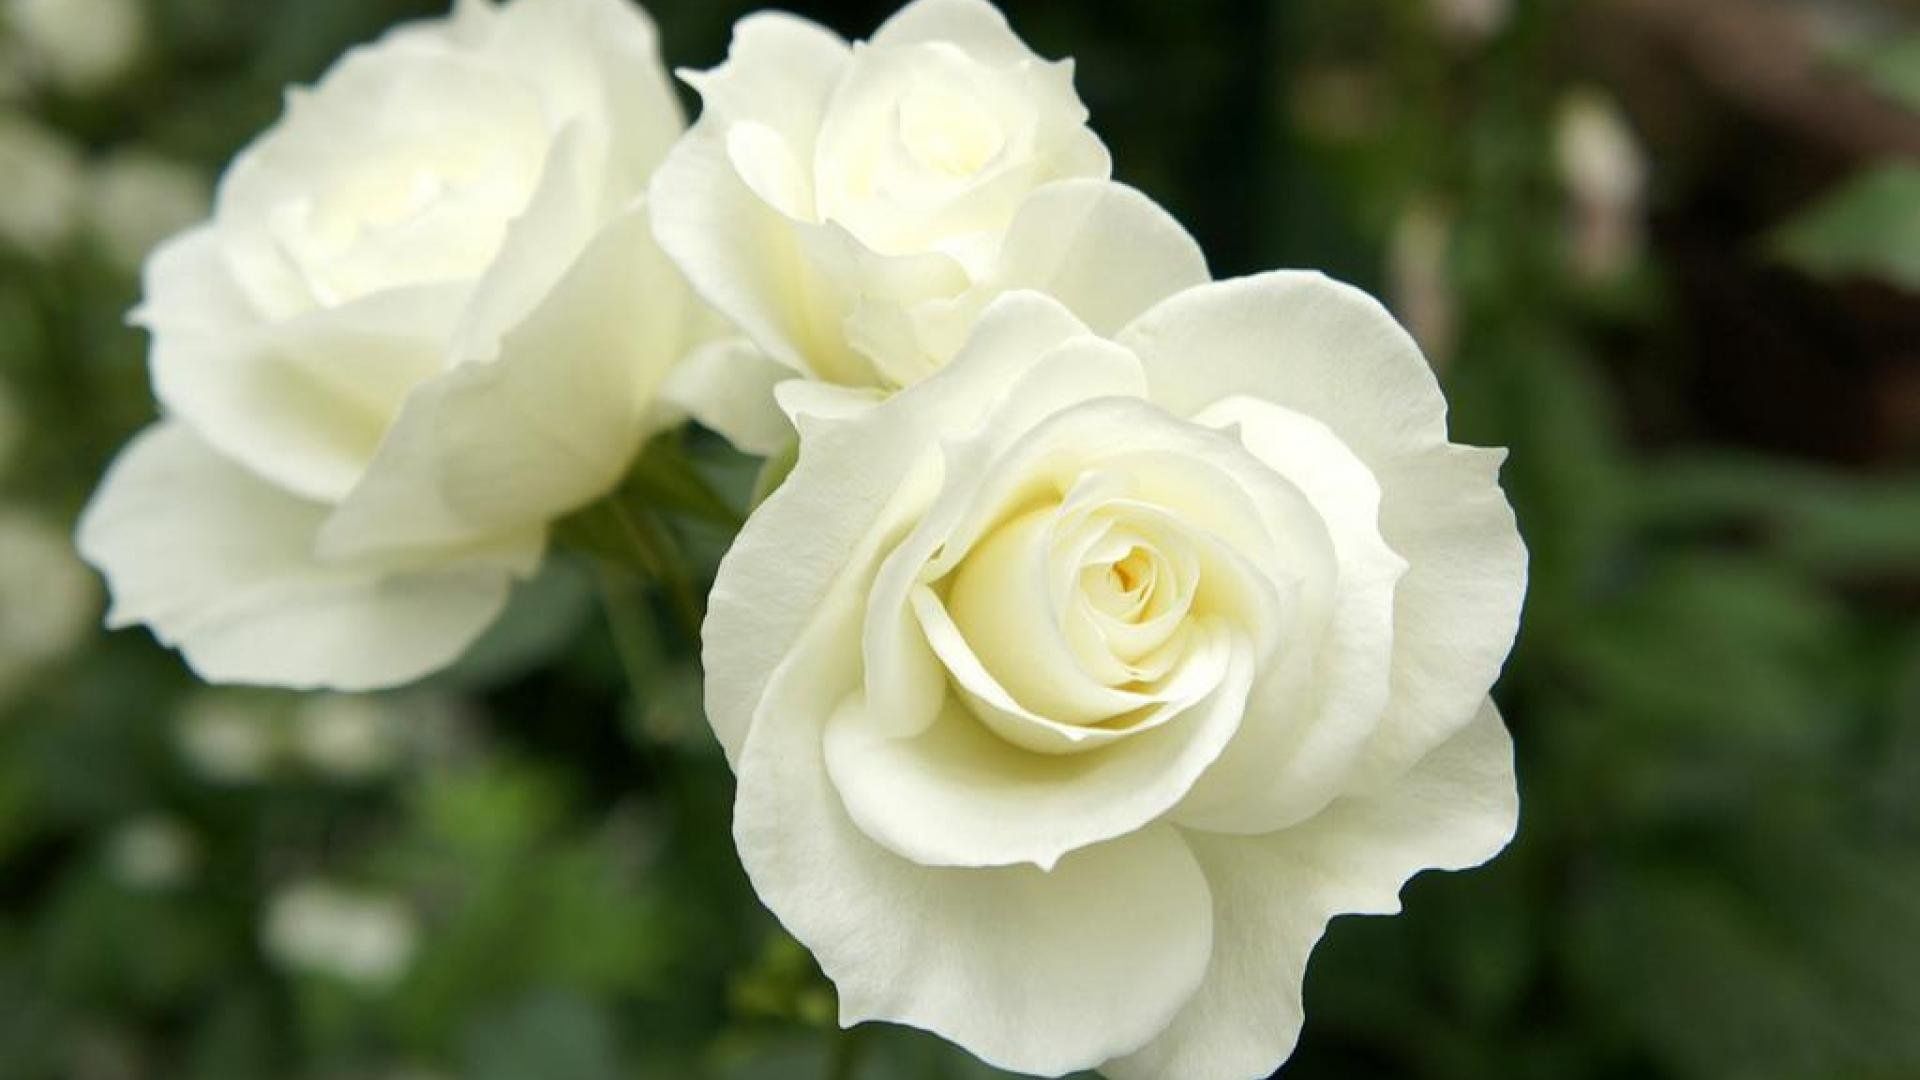 Розы саженцы оптом в алматы, вьющиеся, плетистые, питомник купить розы